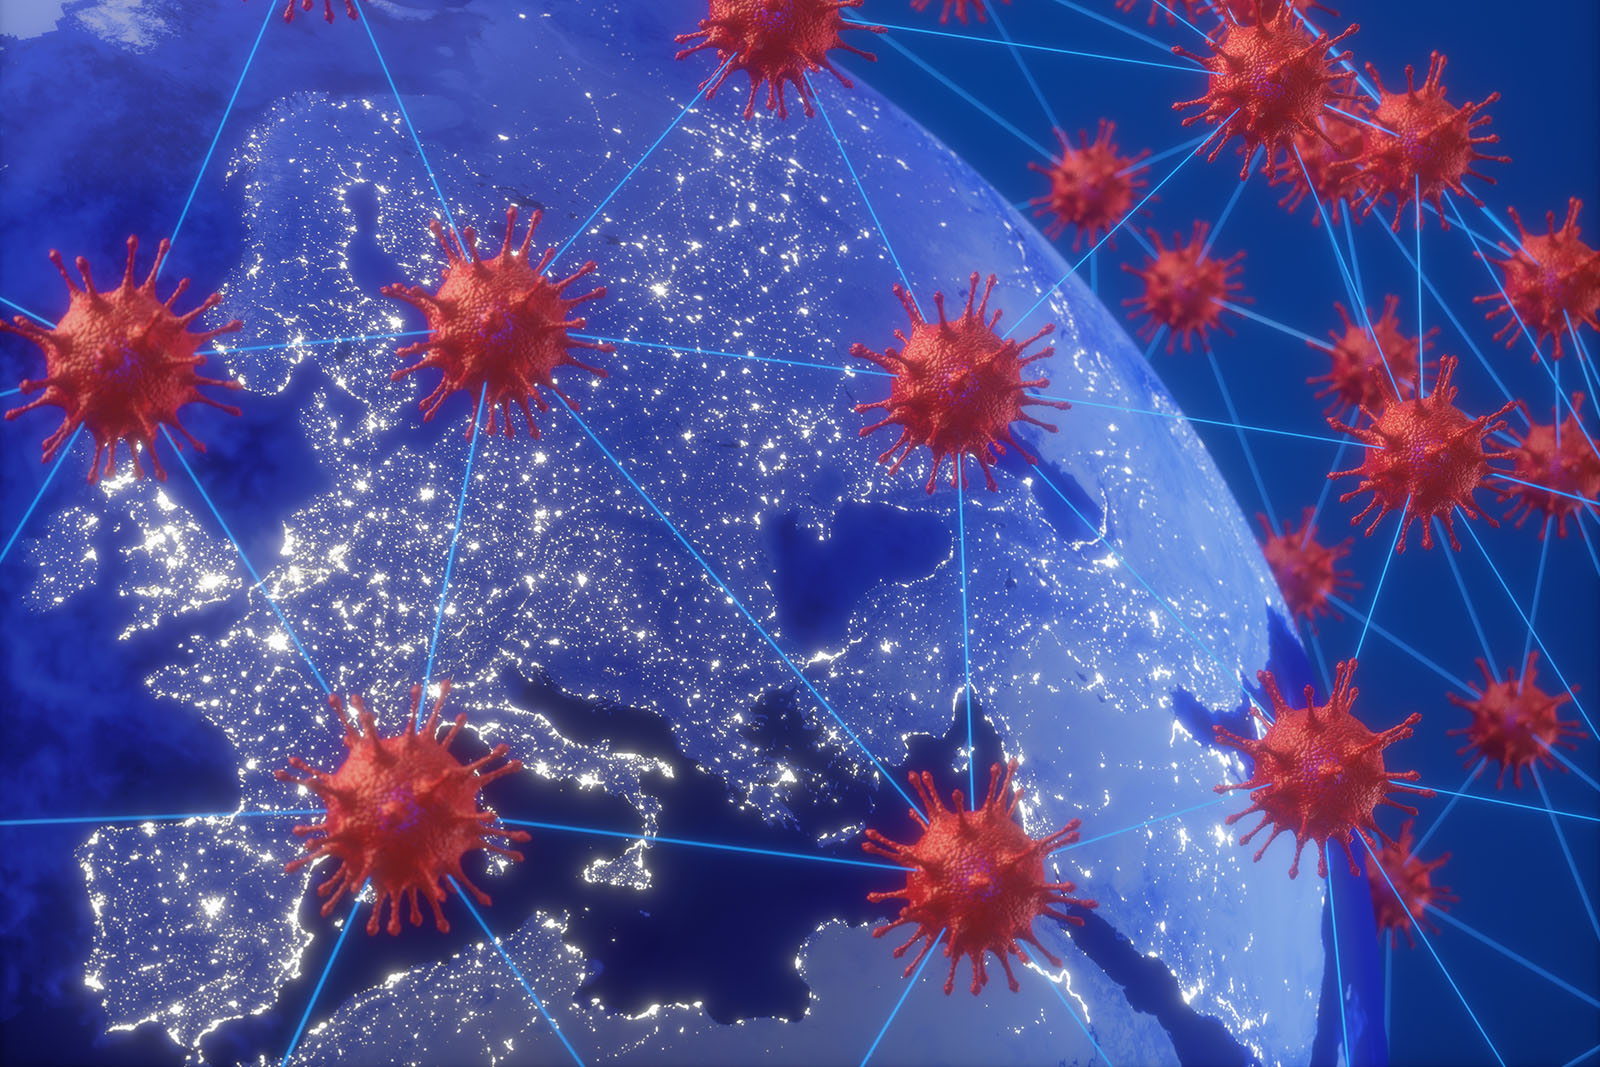 Coronavirus over Europe and Asia